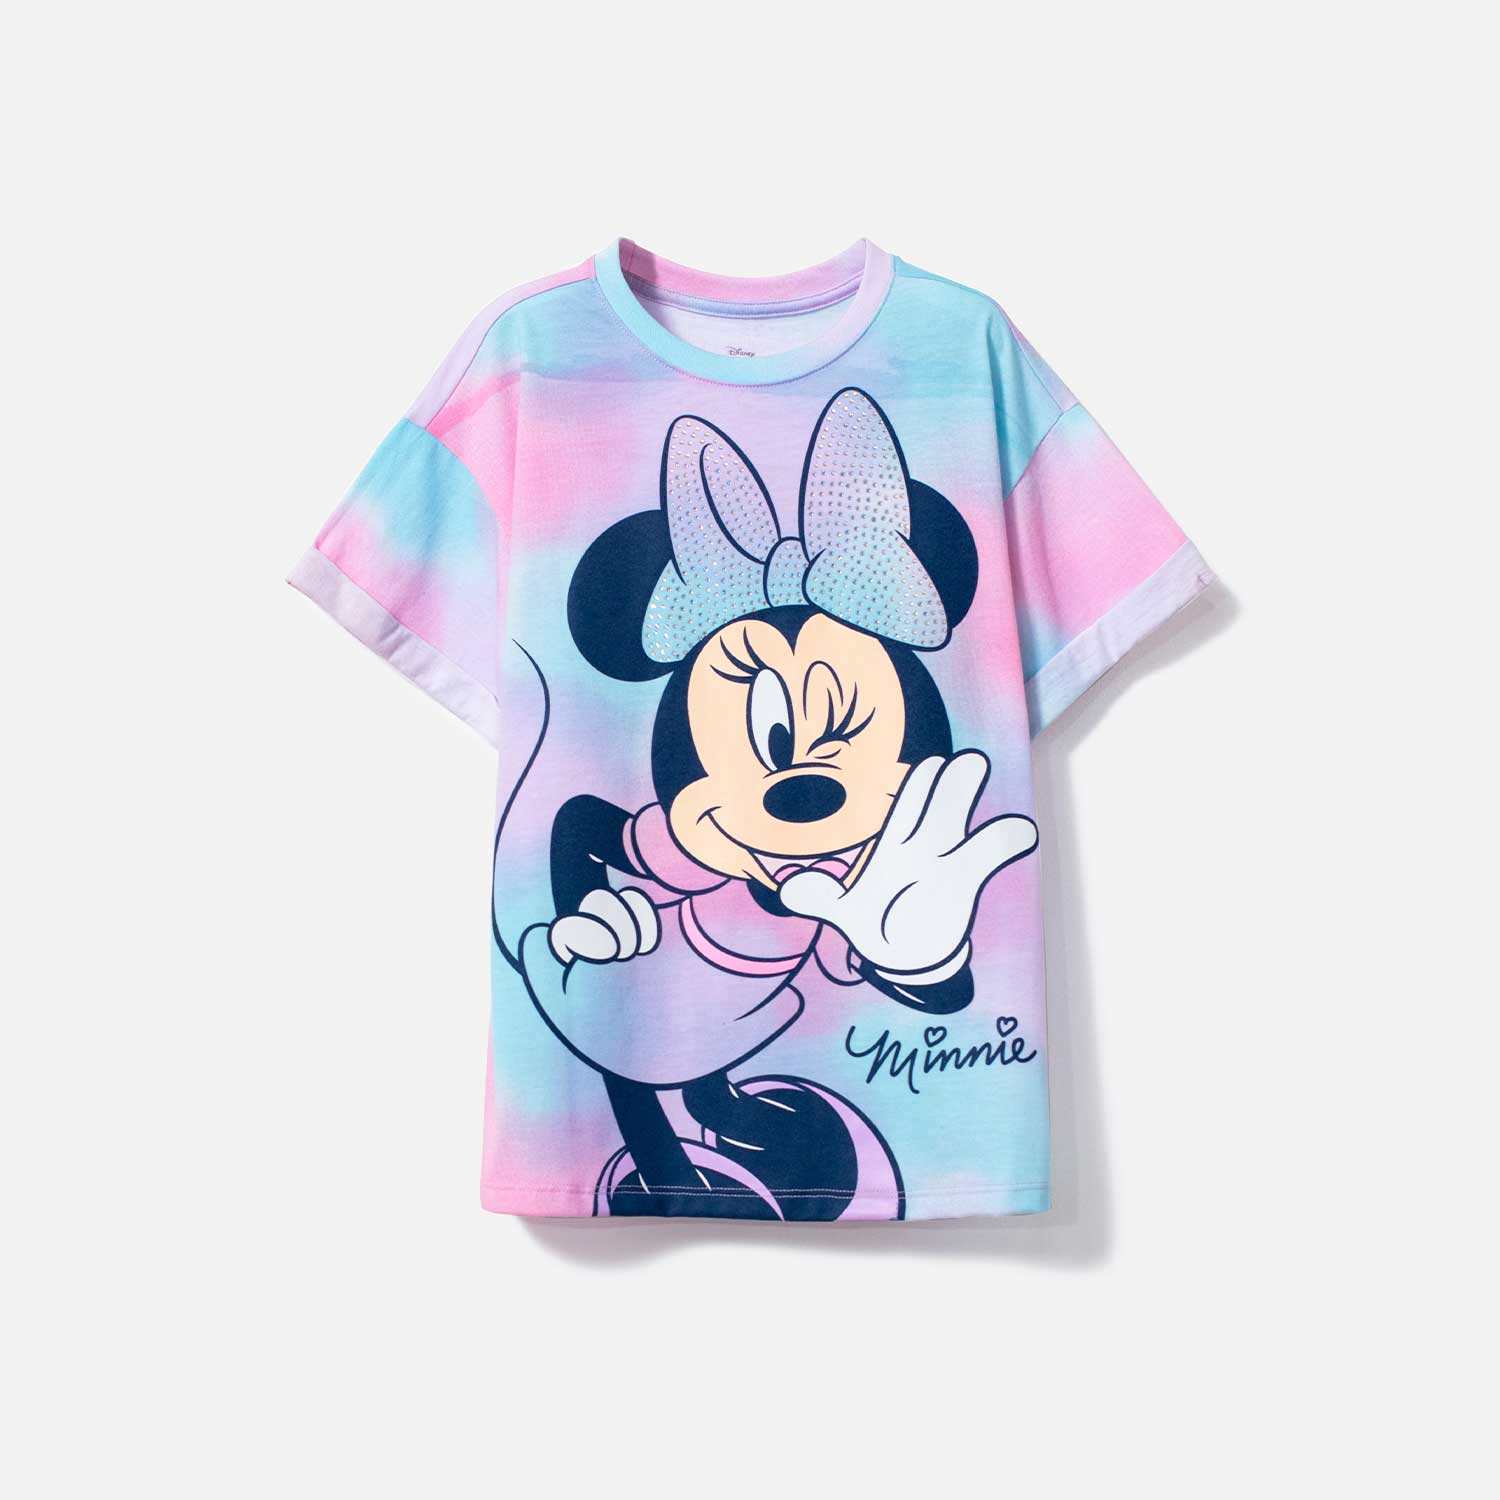 Camiseta de niña, tie dye de Minnie Mouse Disney - Ponemos la Fantasía!